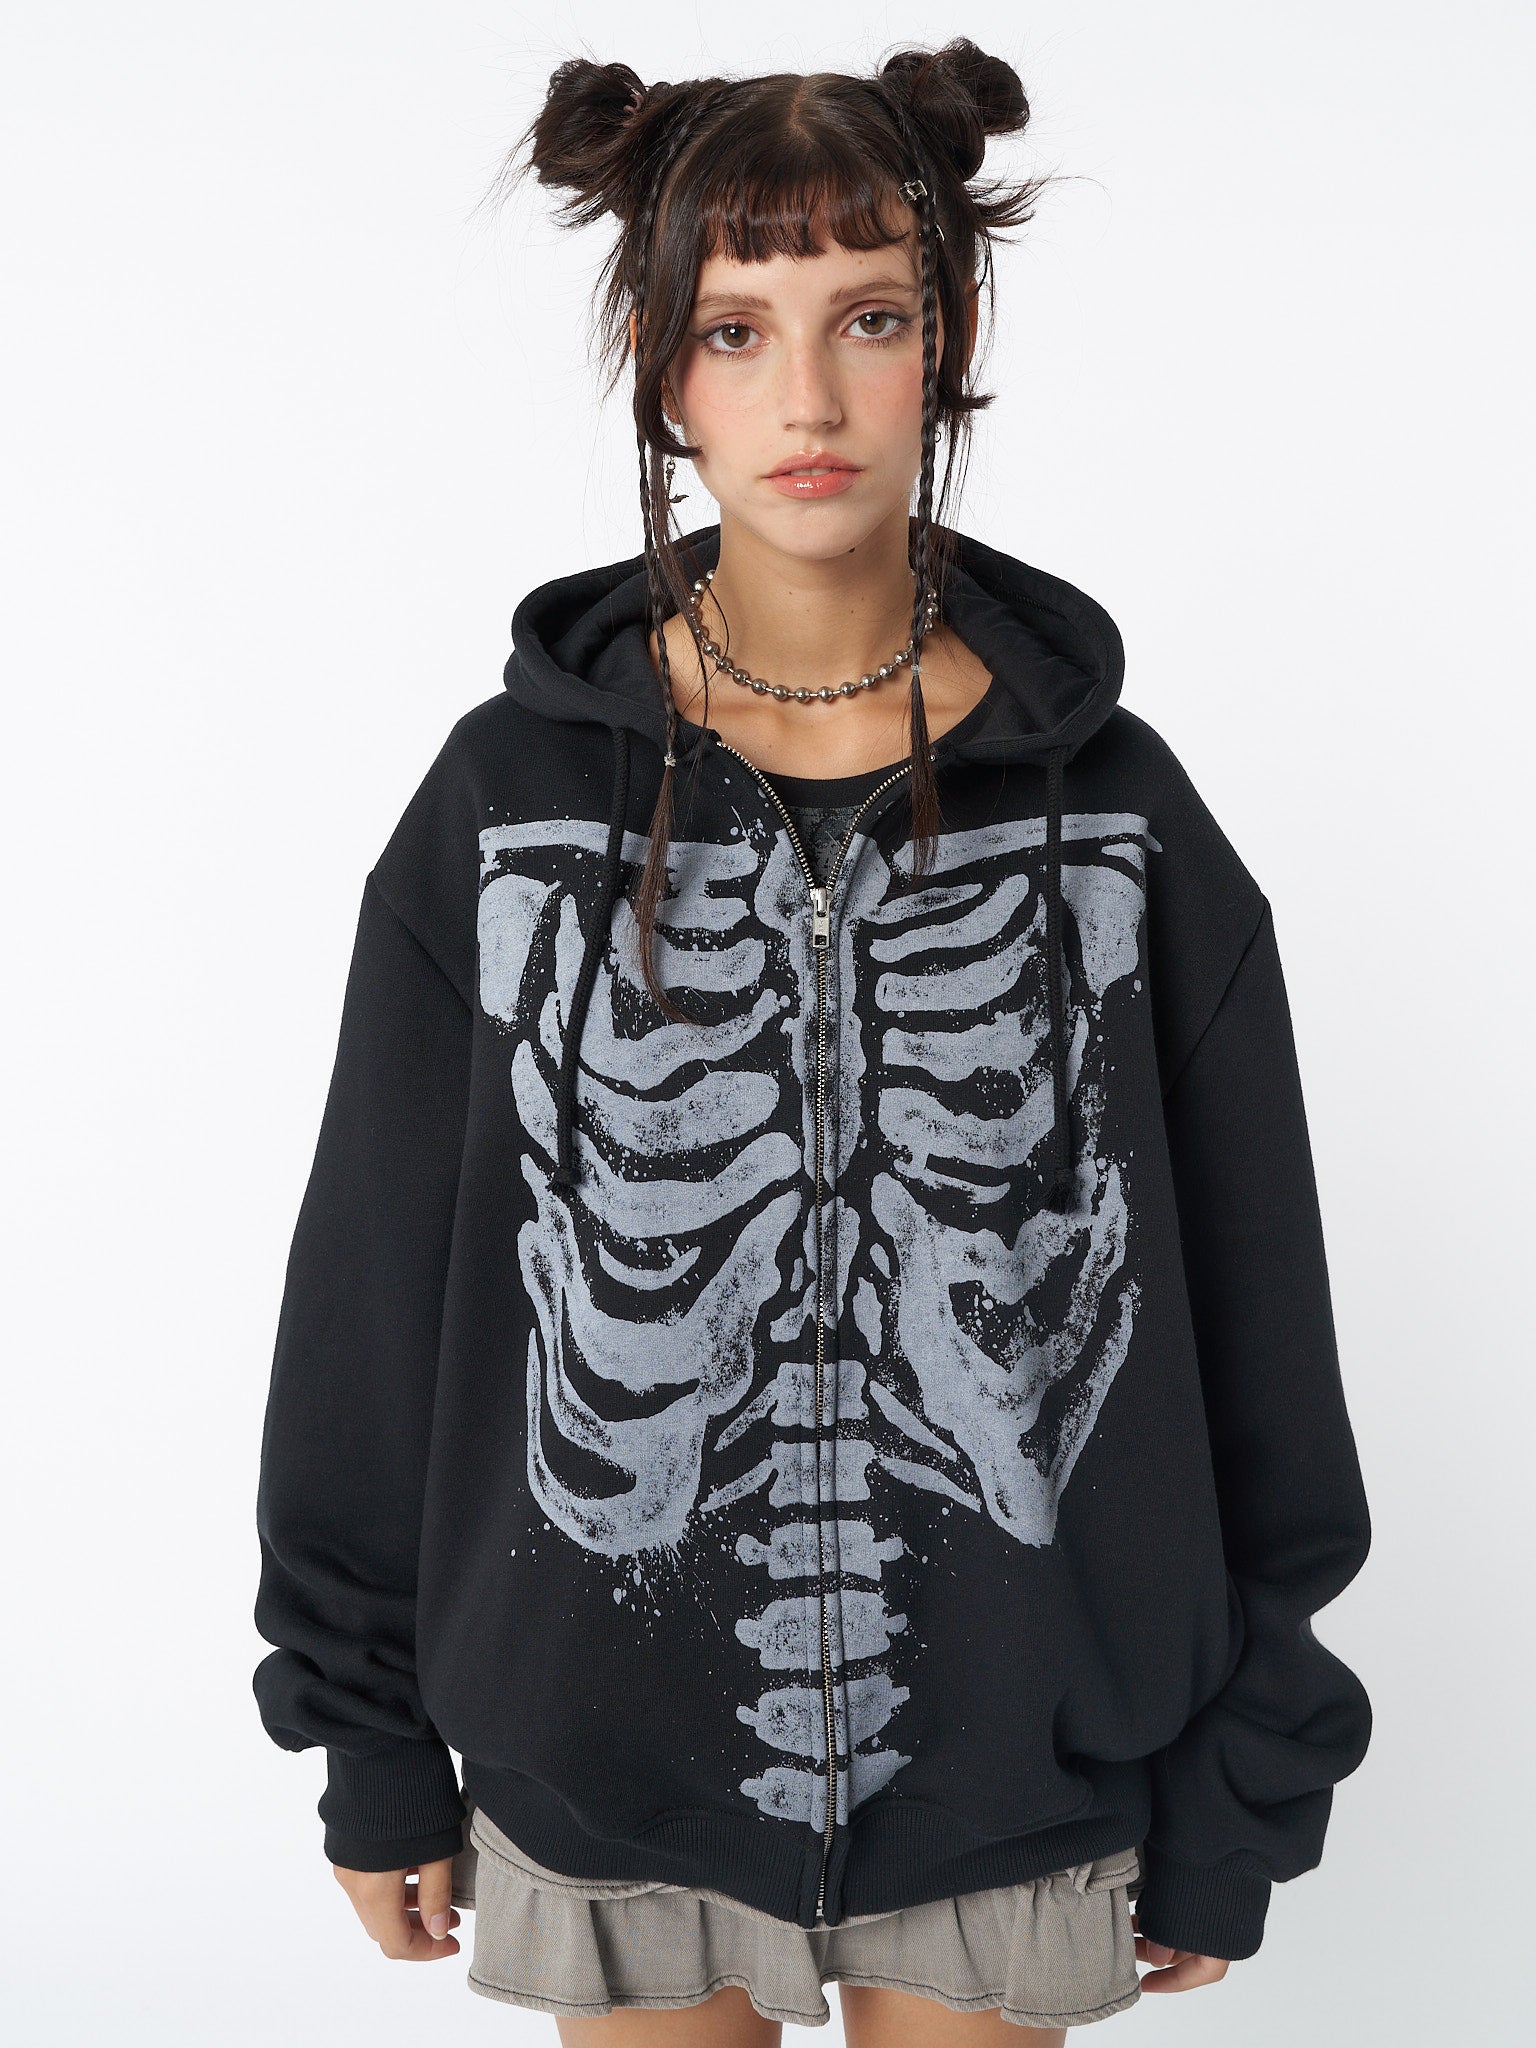 Zip up hoodie jacket in black with skeleton graphic screen print